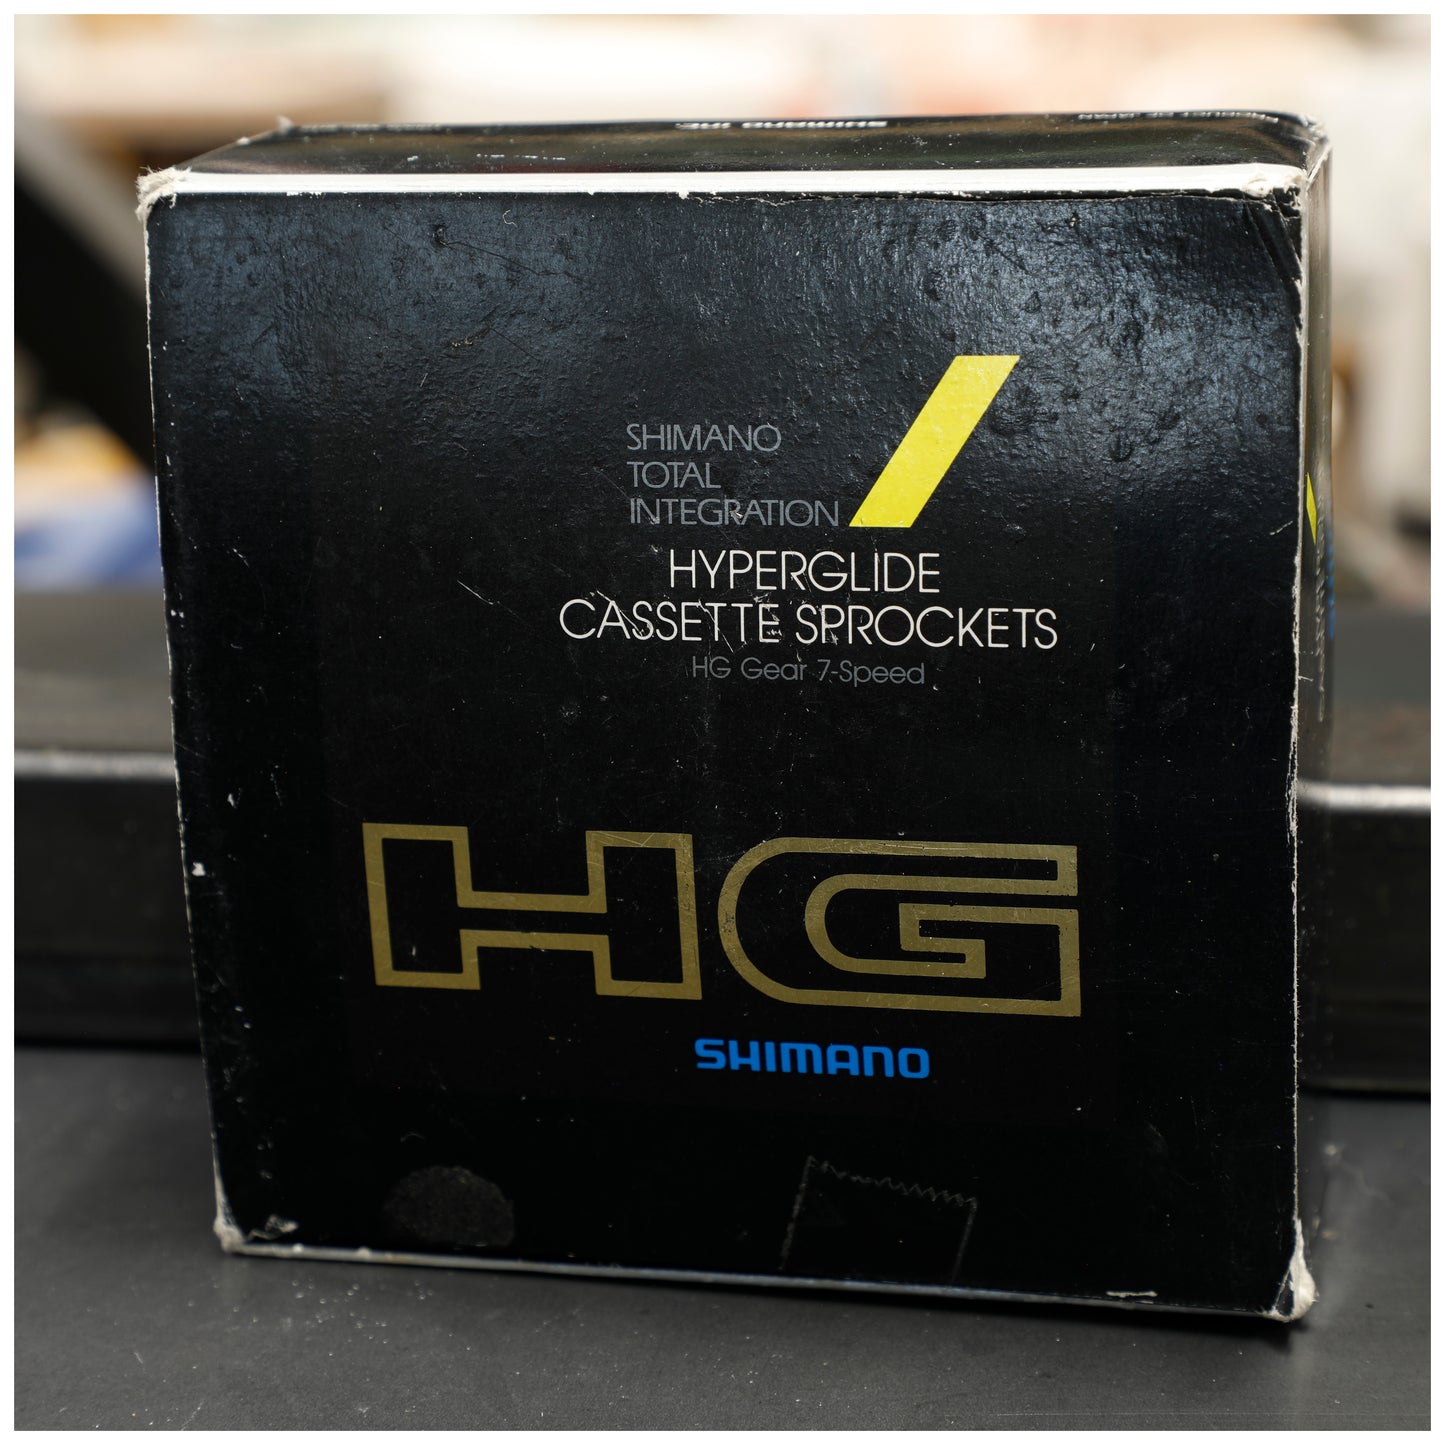 Shimano HyperGlide Cassette